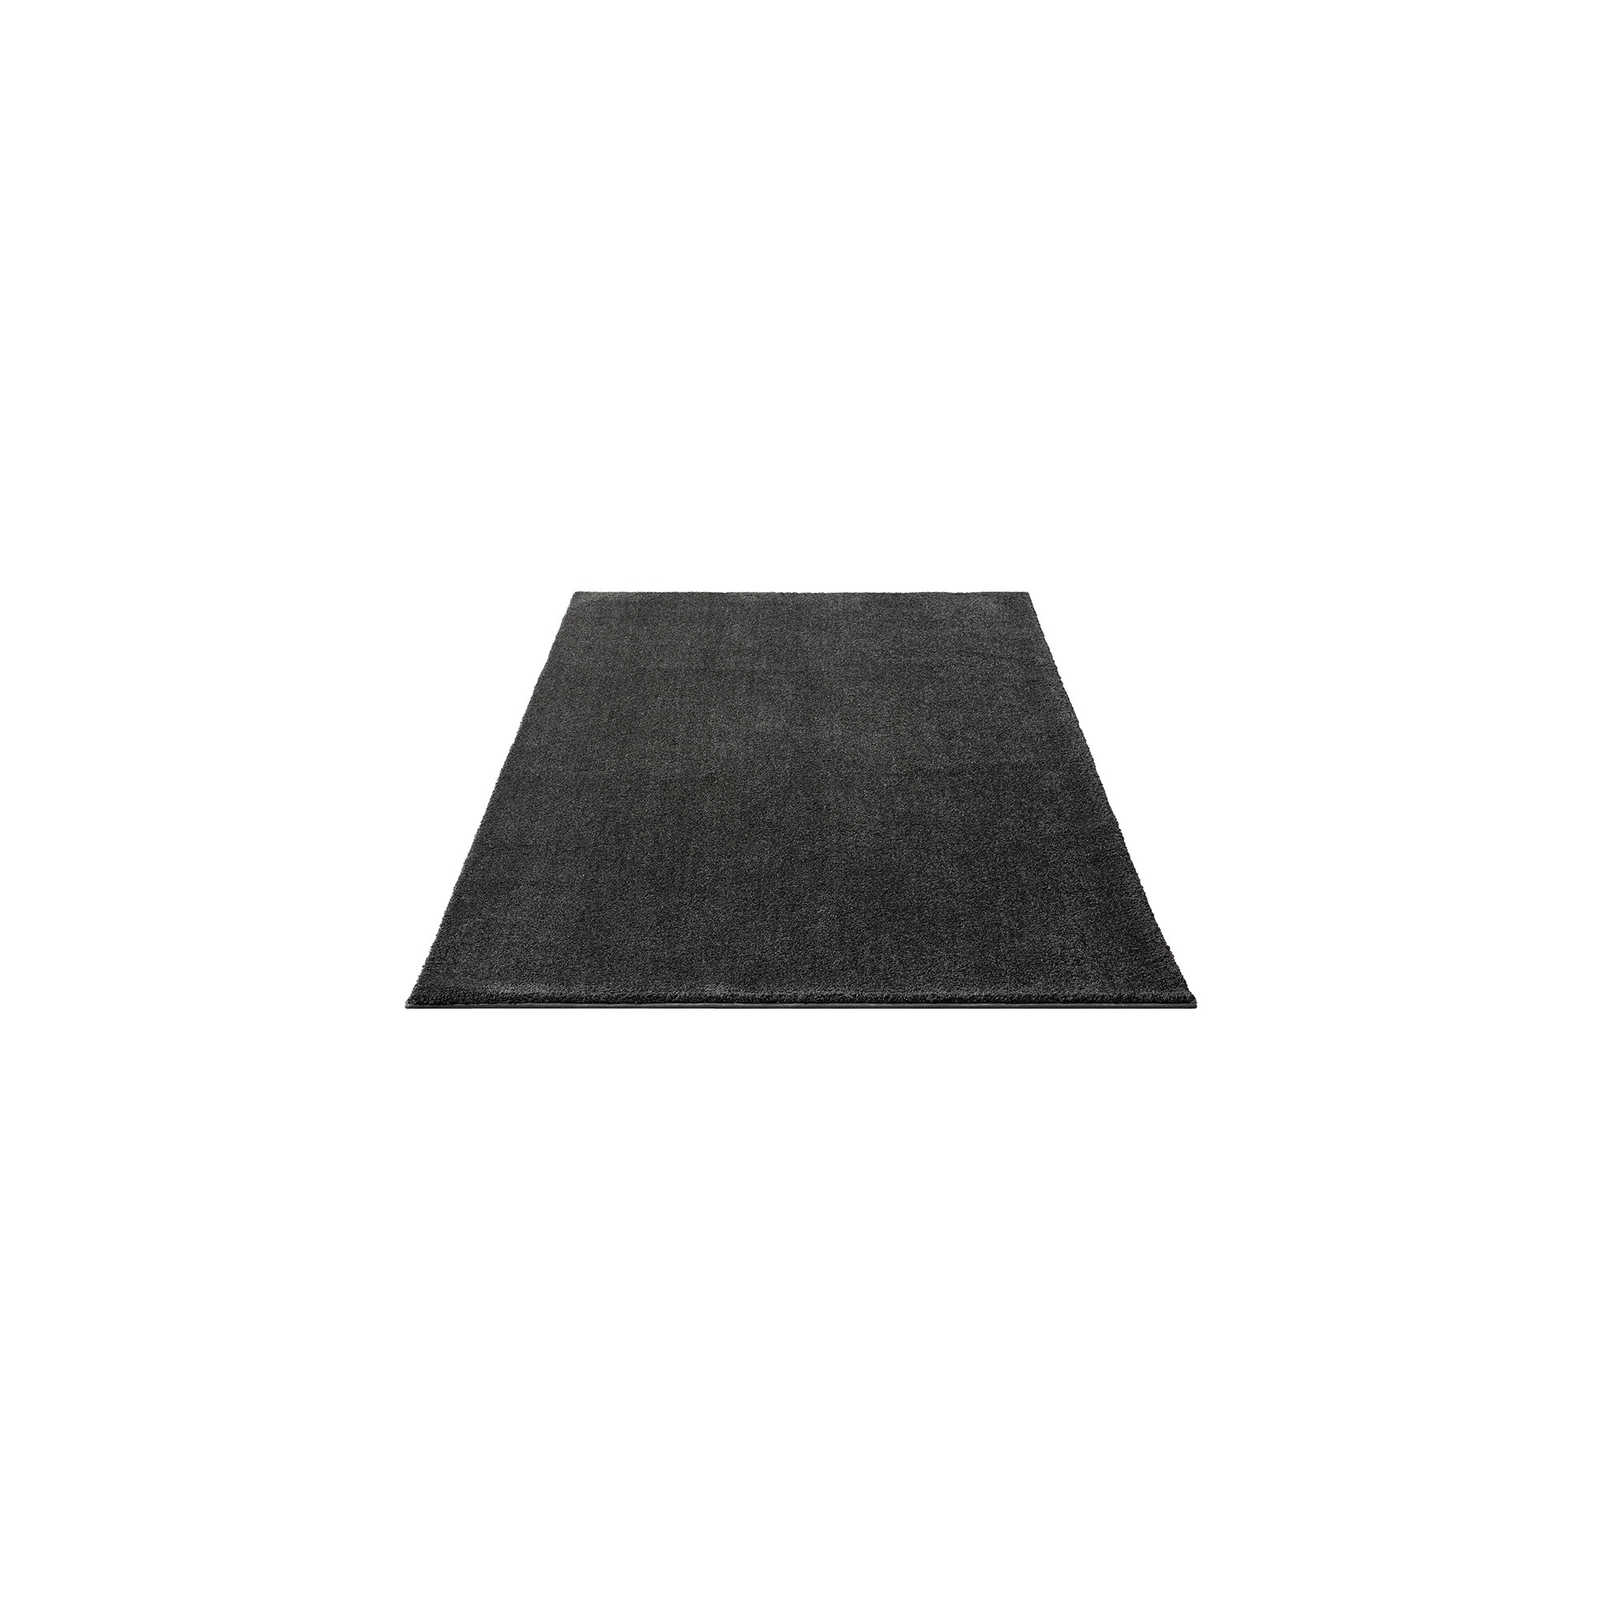 Soft short pile carpet in anthracite - 150 x 80 cm
